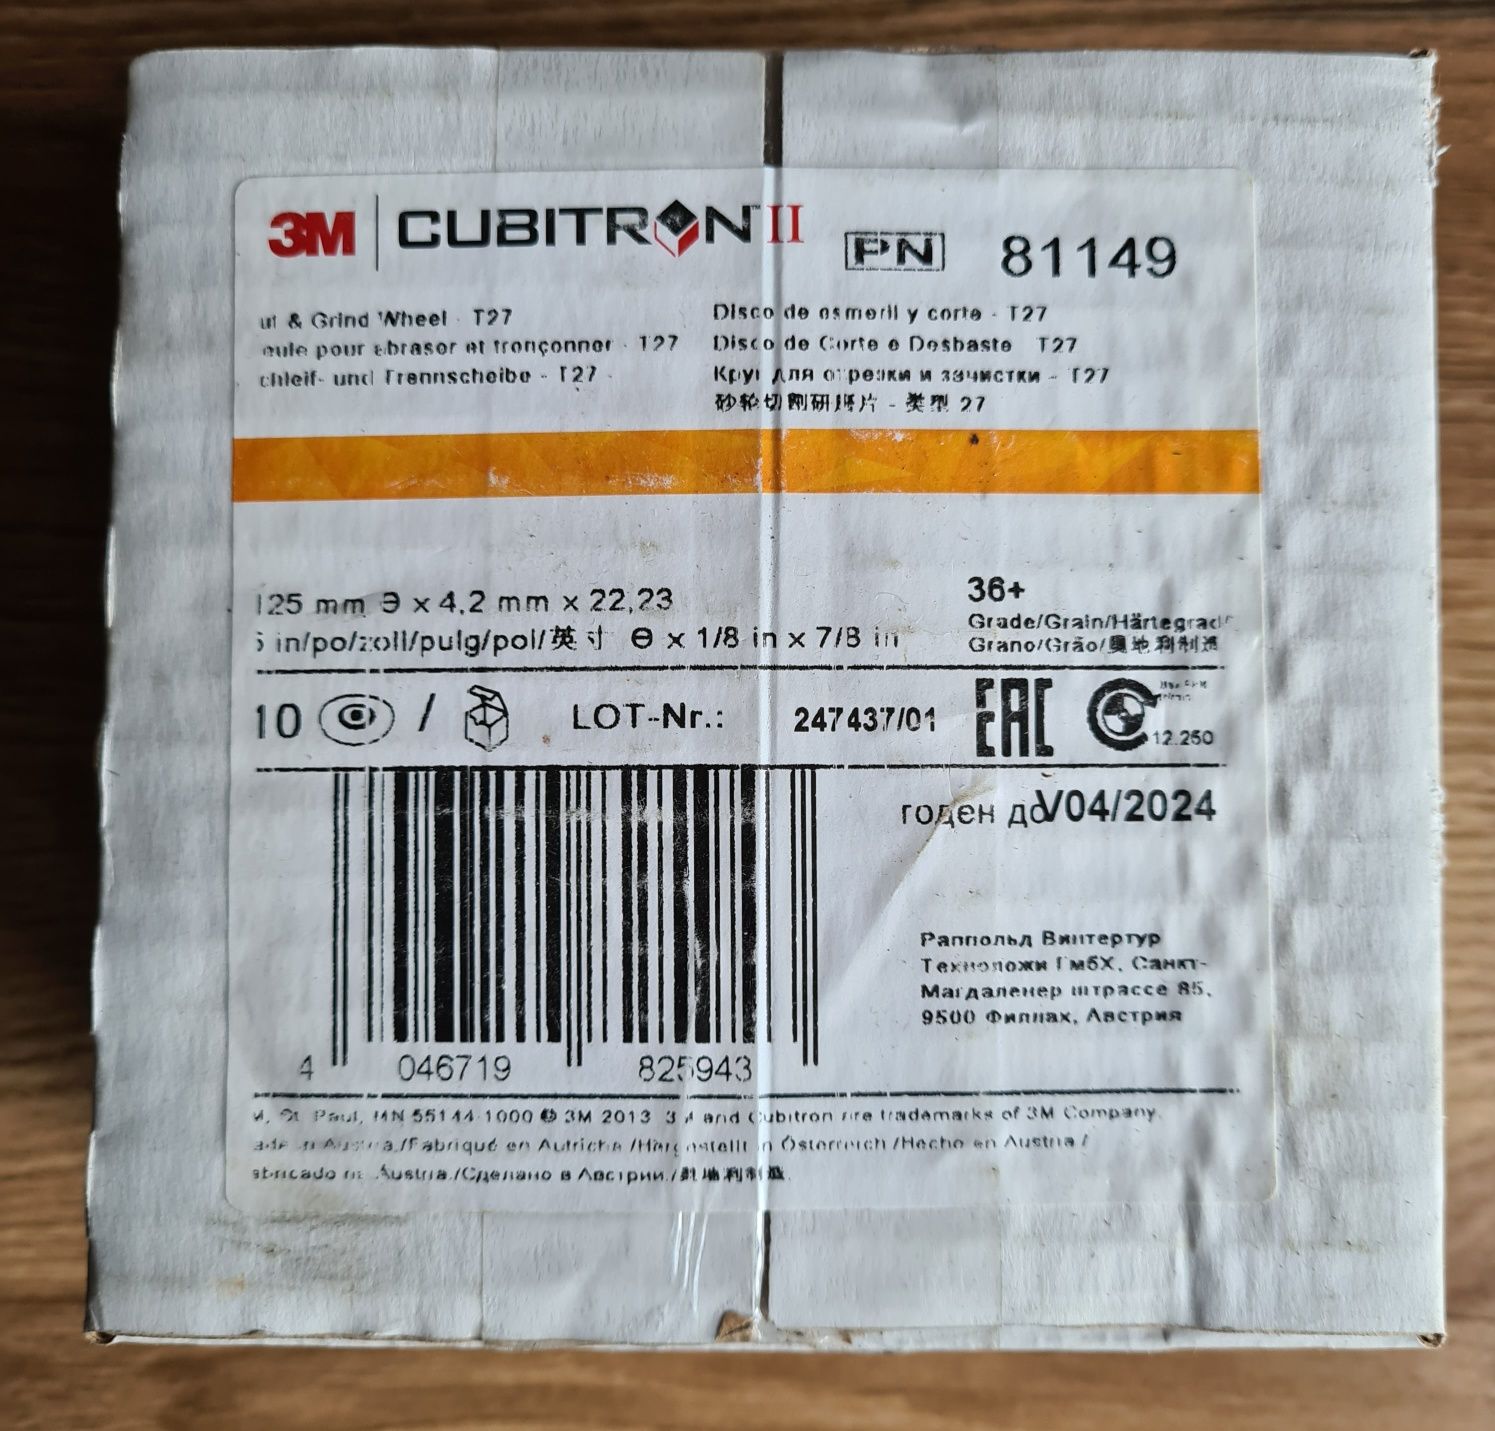 81149 ściernica Cubitron II 3M 125 mm x 4,2 mm x 22 mm,